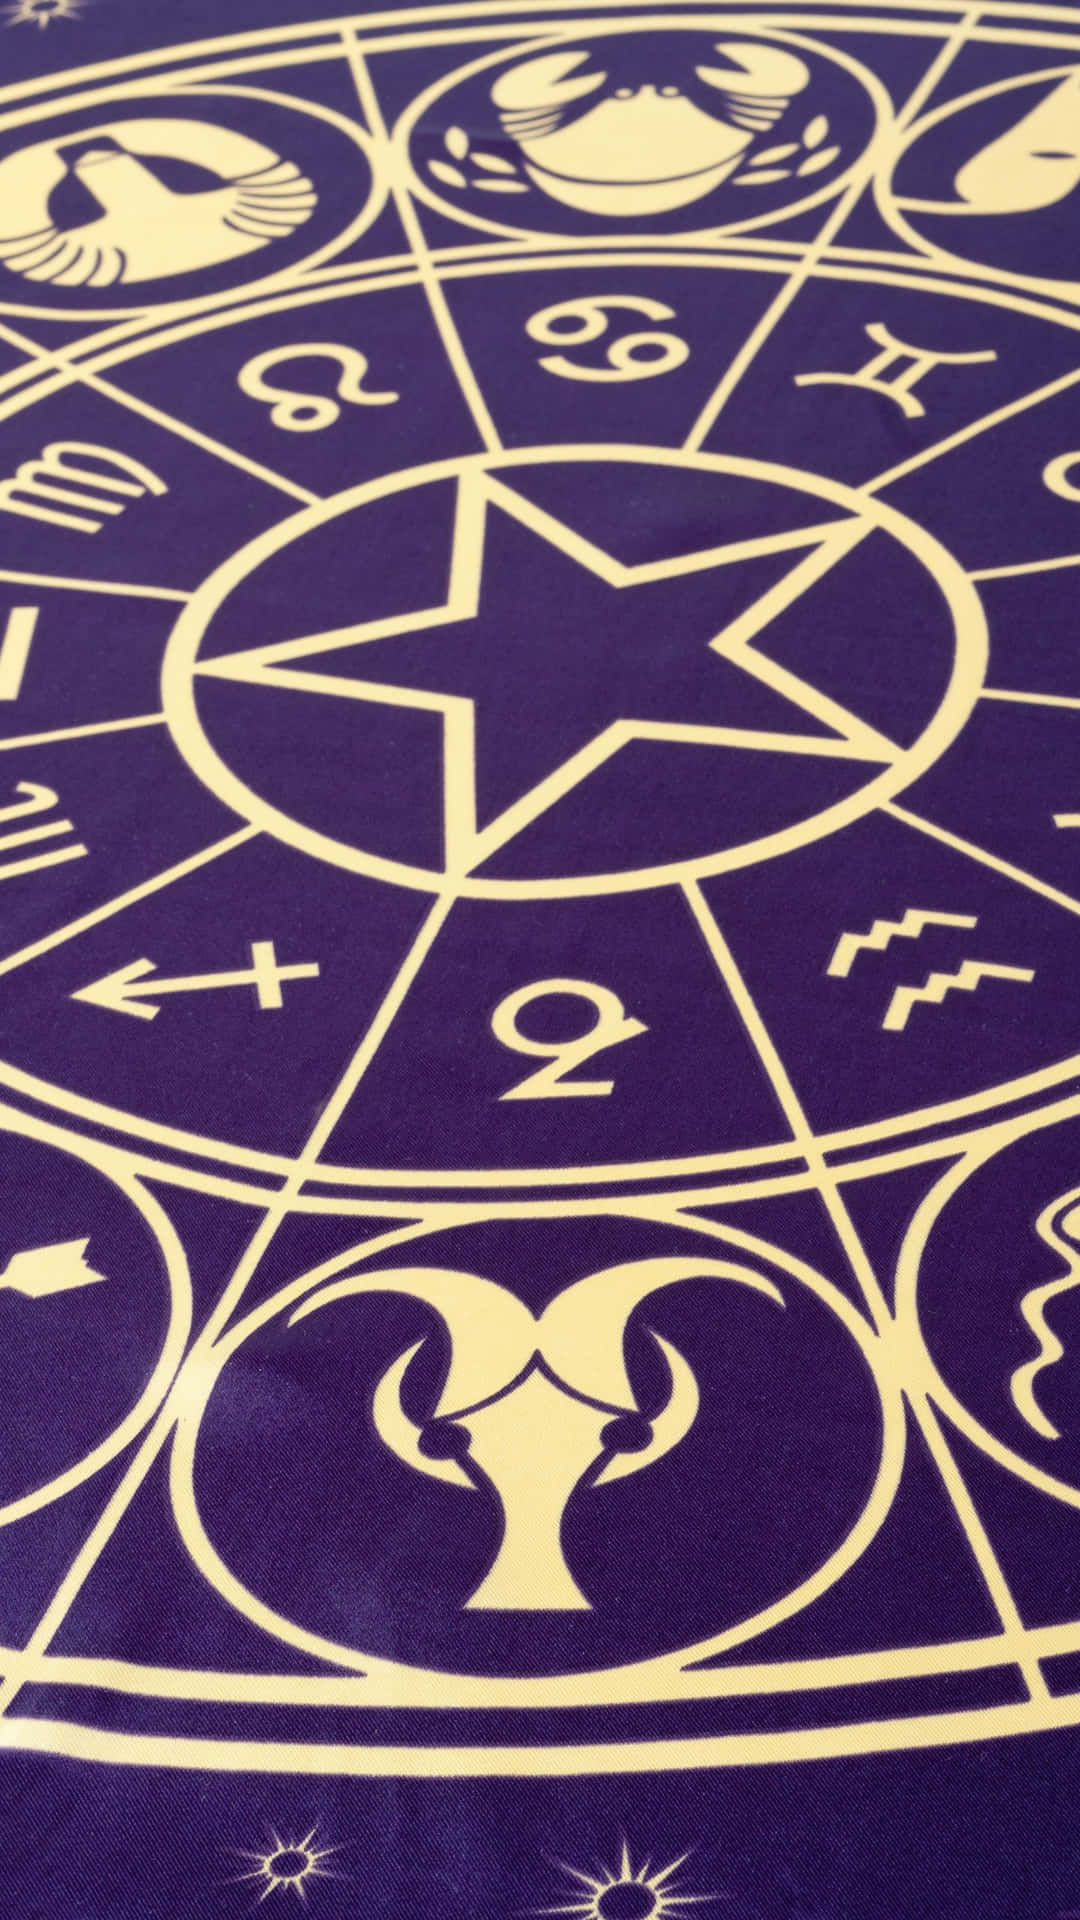 Enlila Matta Med Astrologiska Symboler På Den Wallpaper